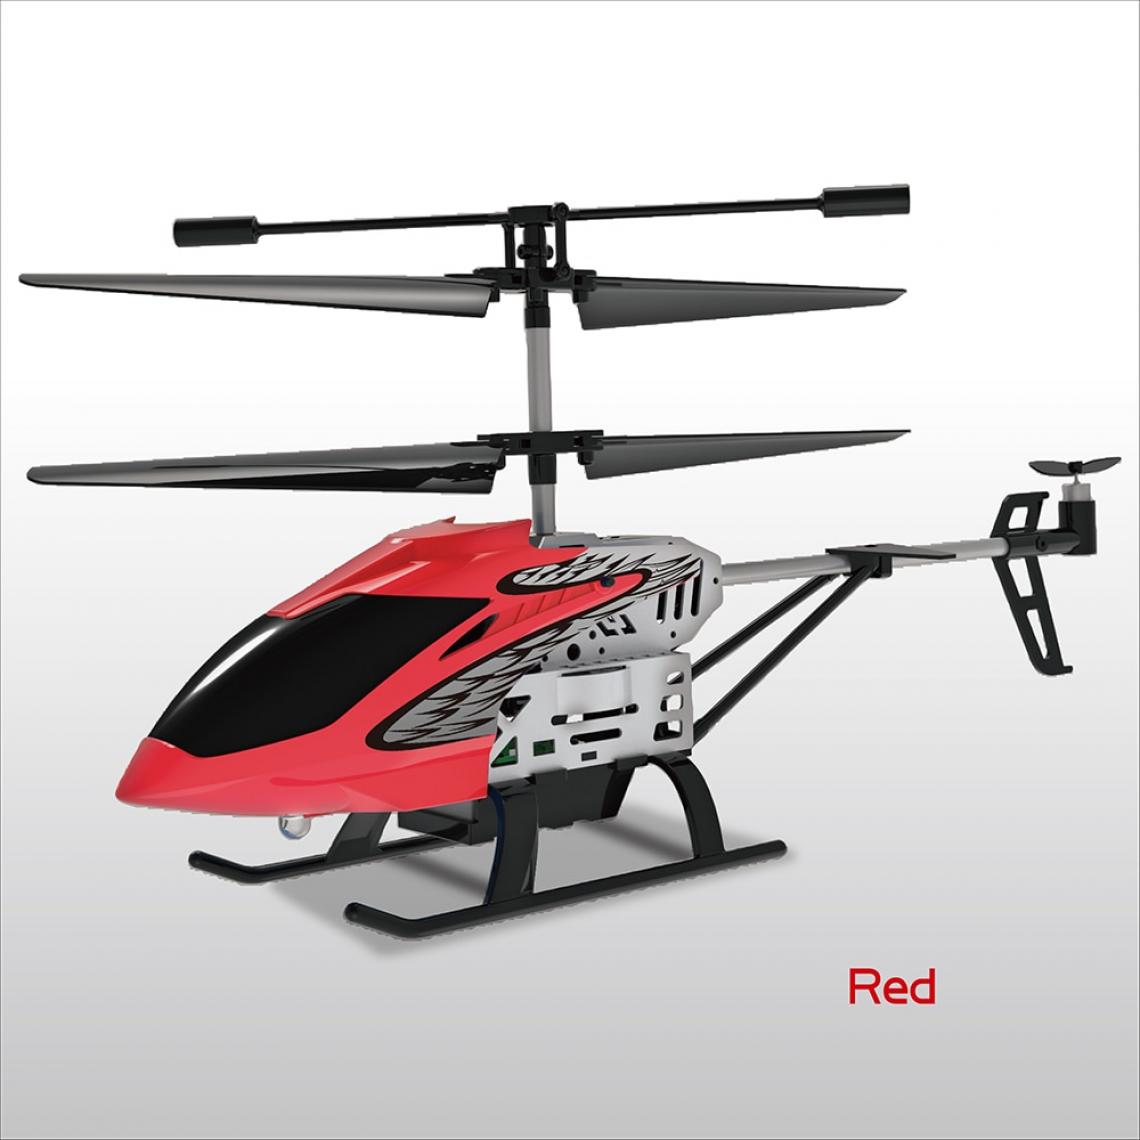 Universal - Hélicoptère métal mini RC parasite RC hélicoptère 3,5 canaux une clé vol hélicoptère extérieur drôle silence 2.4GHz longue portée drone jouets pour enfants | RC Helicopter (rouge) - Hélicoptères RC